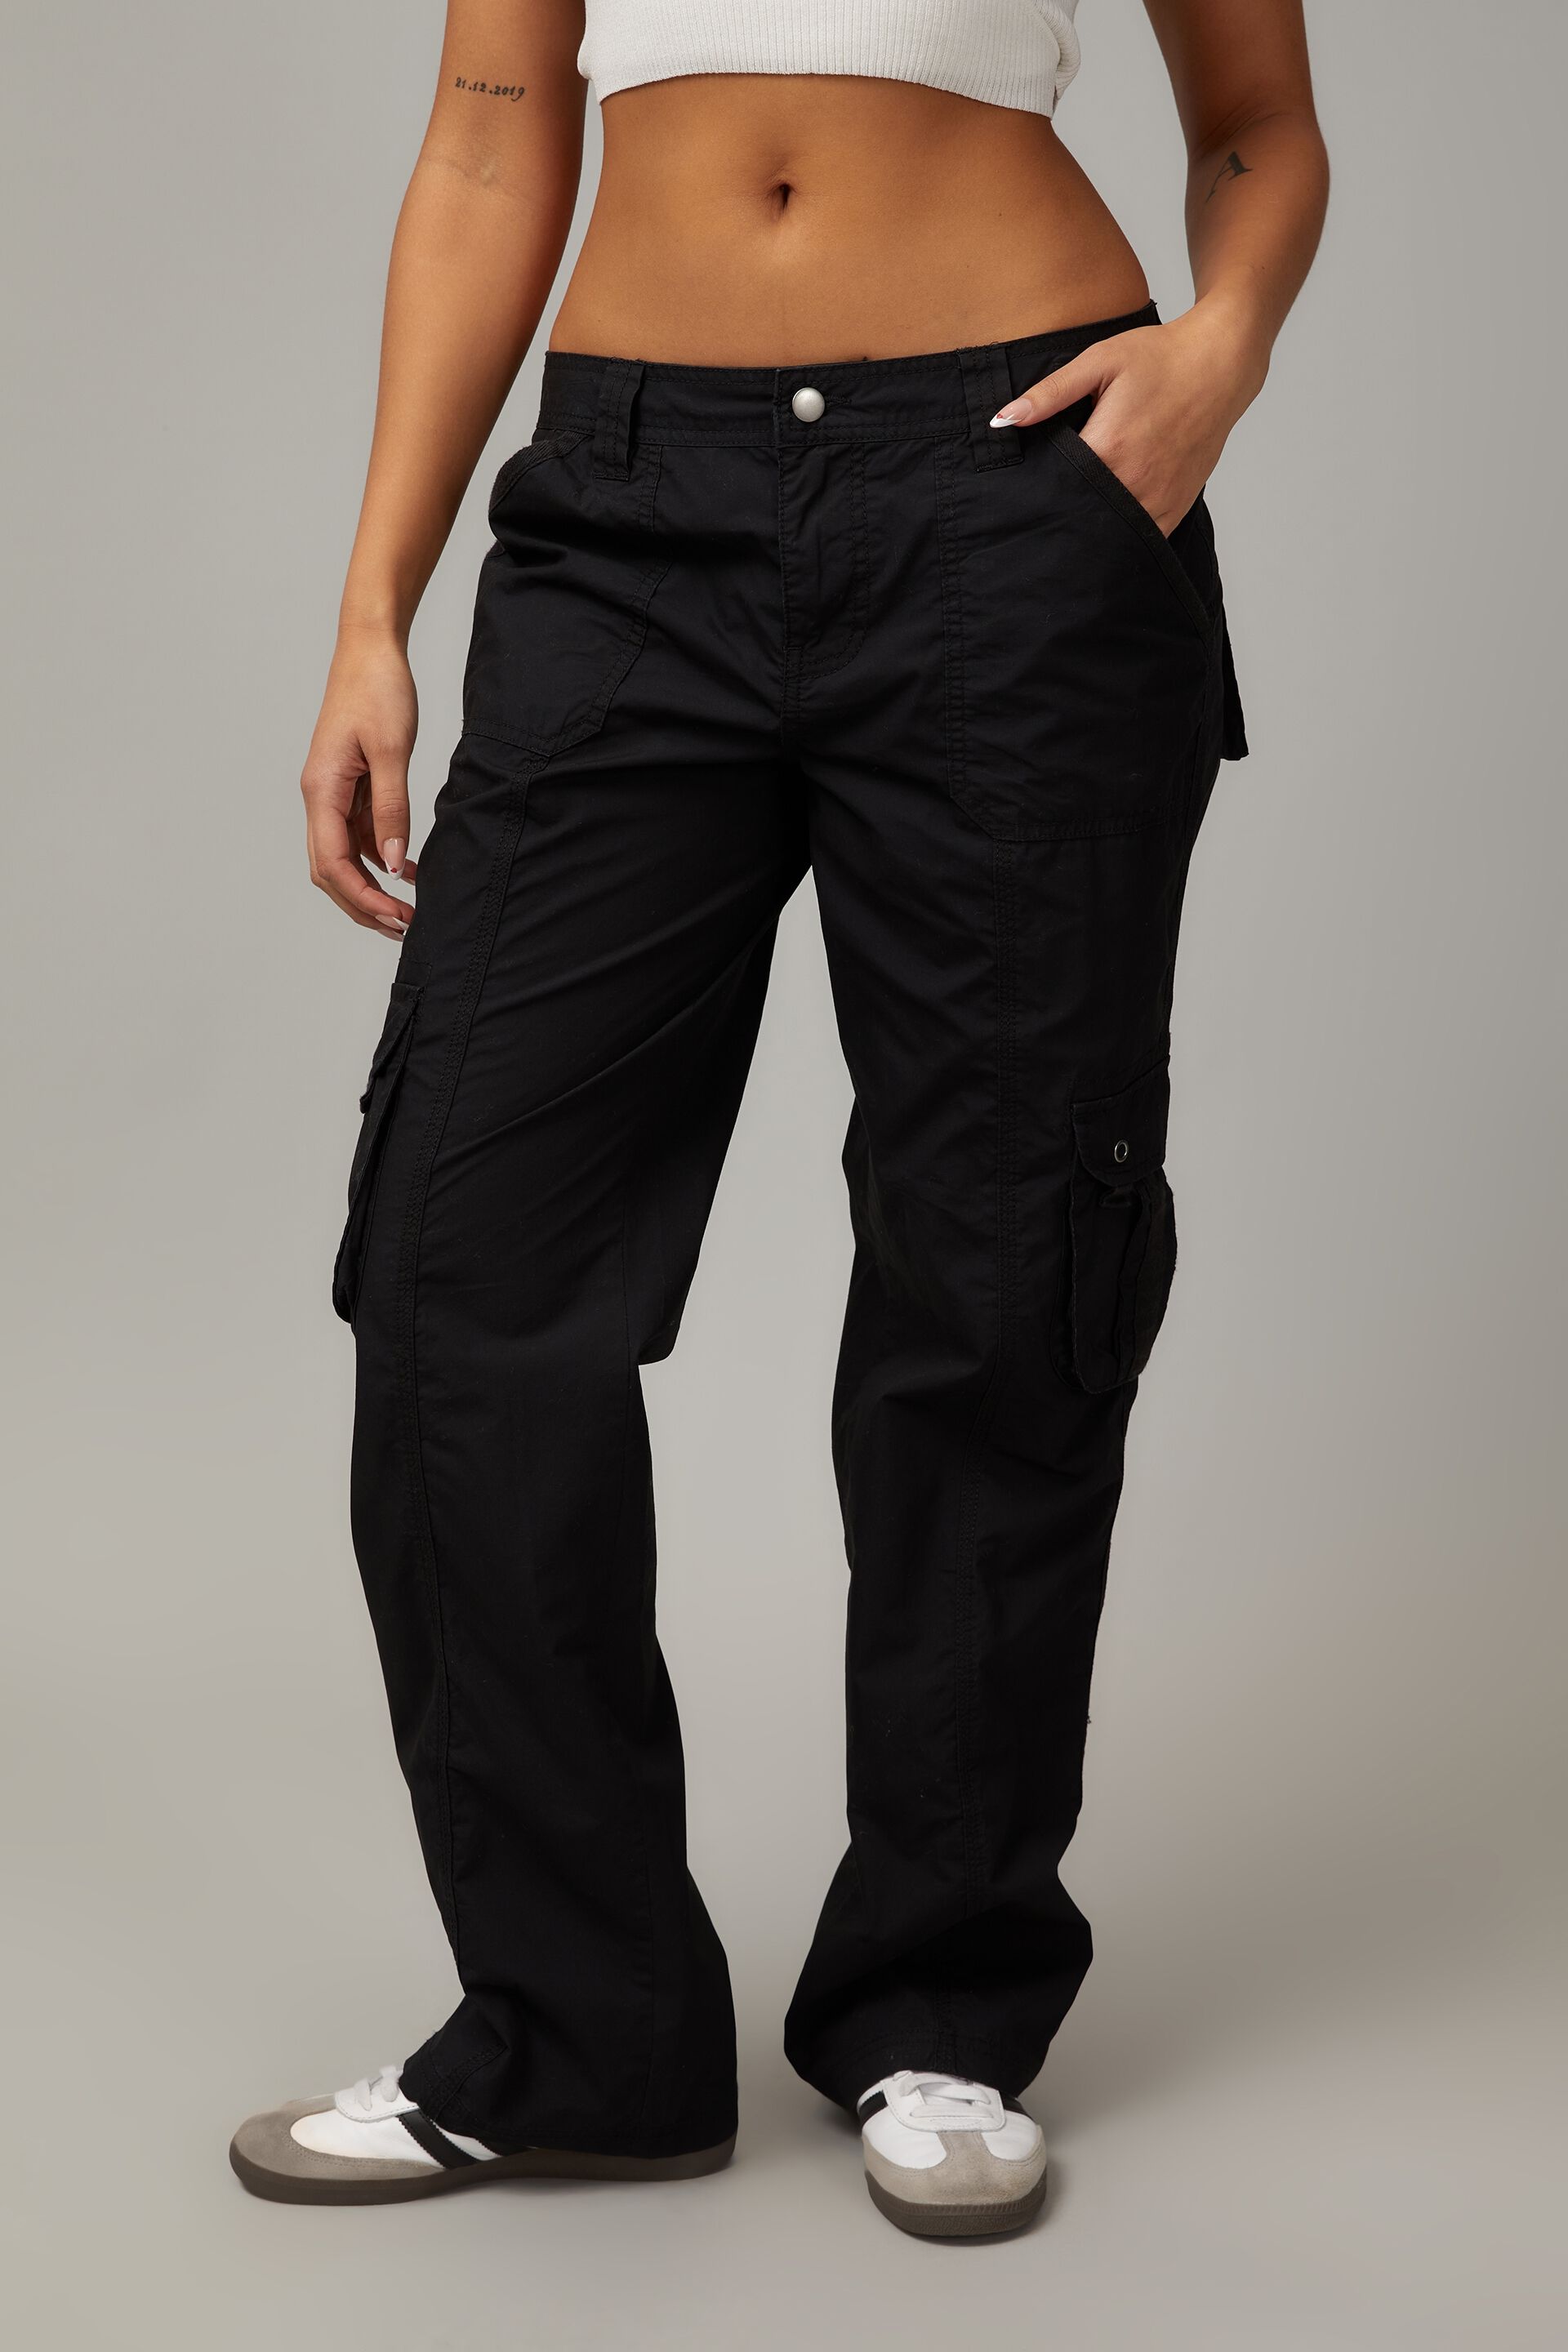 Mens Fashion Black Cargo Trousers Casual Hip Hop Harem Pencil Pants  Sweatpants